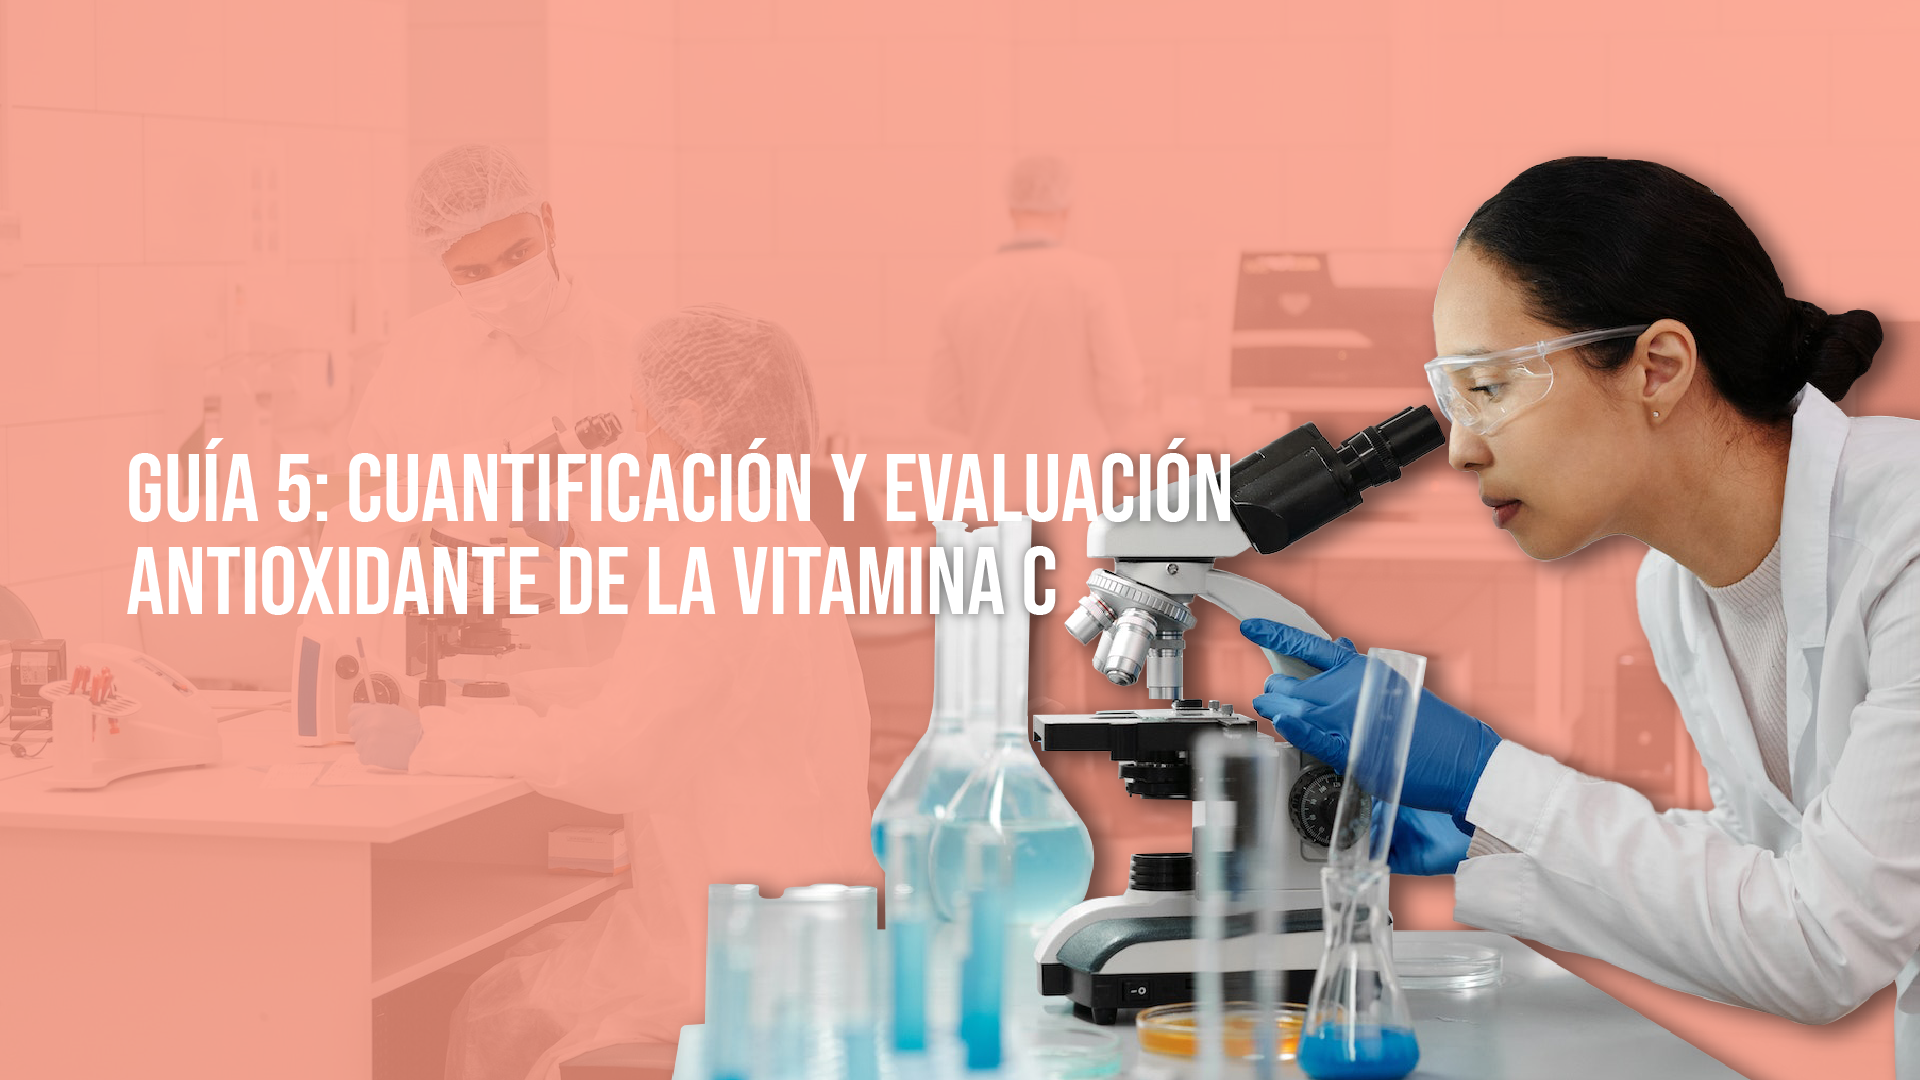 Guía 5: Cuantificación y evaluación antioxidante de la vitamina C